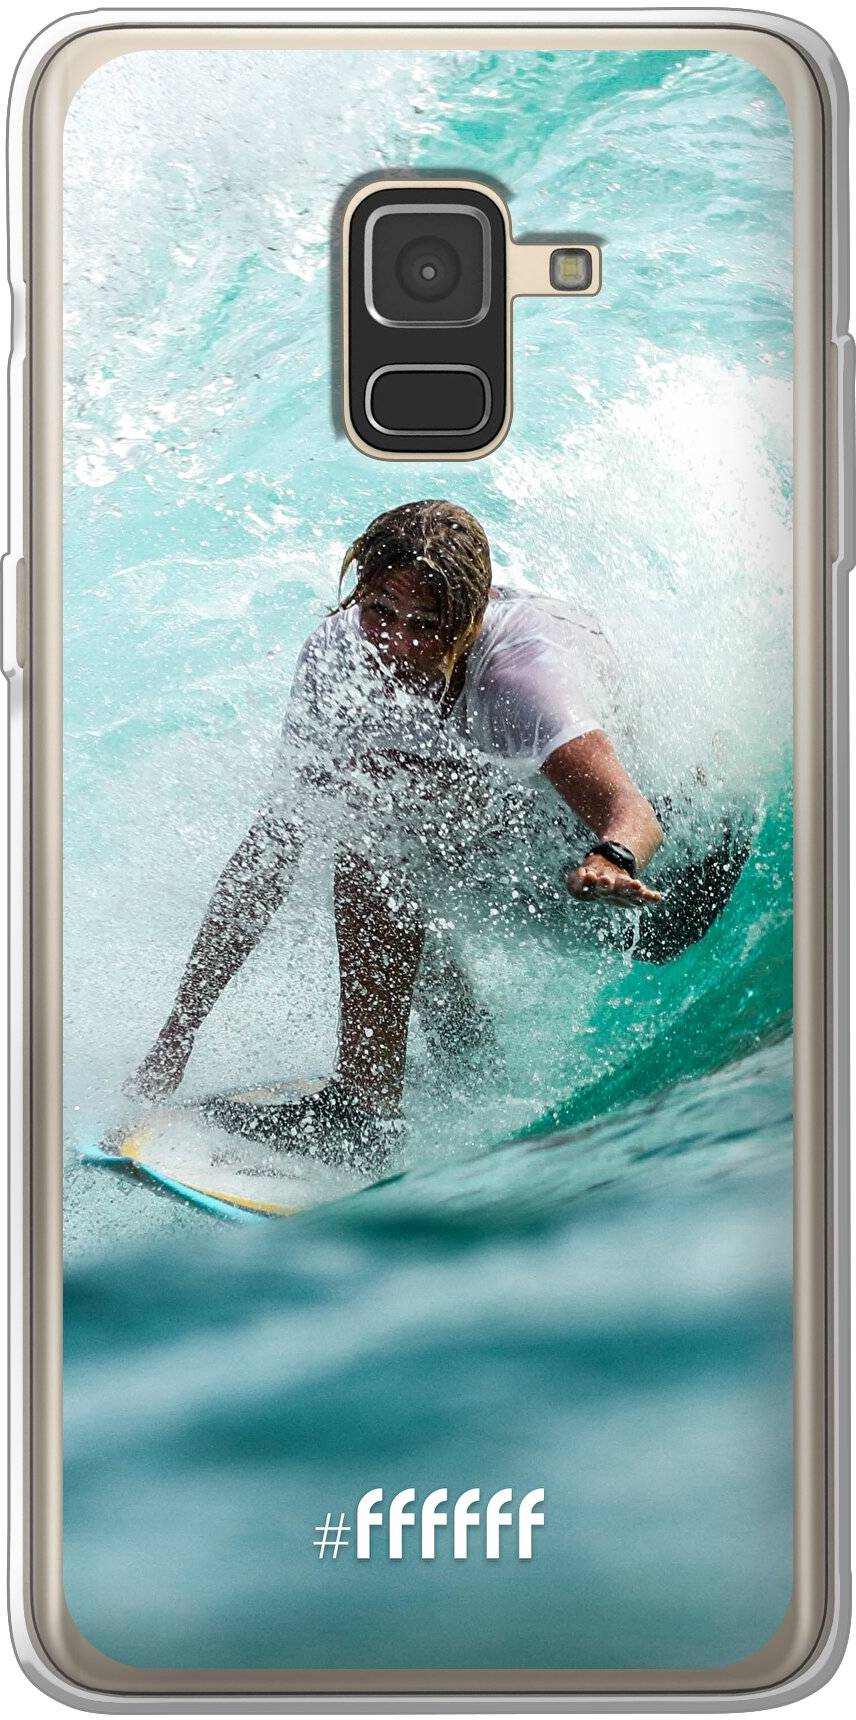 Boy Surfing Galaxy A8 (2018)